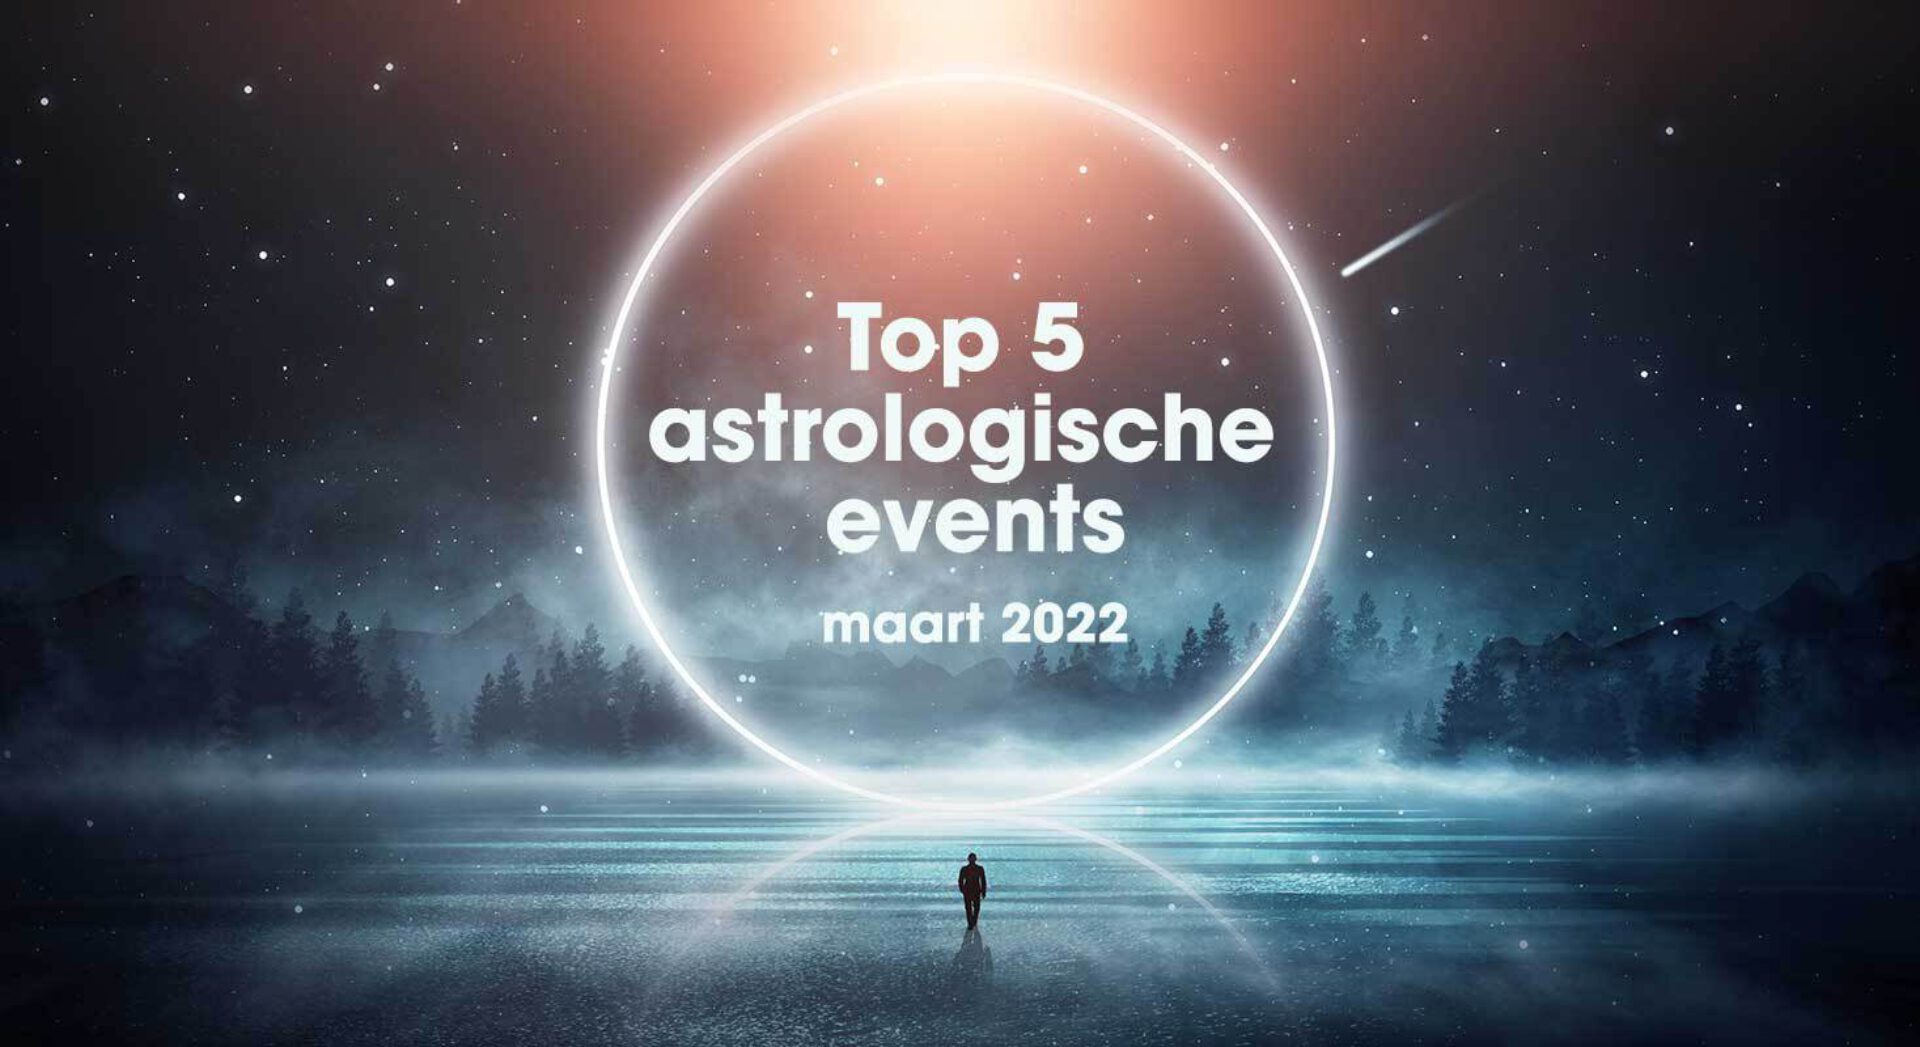 De top 5 astrologische gebeurtenissen in maart 2022